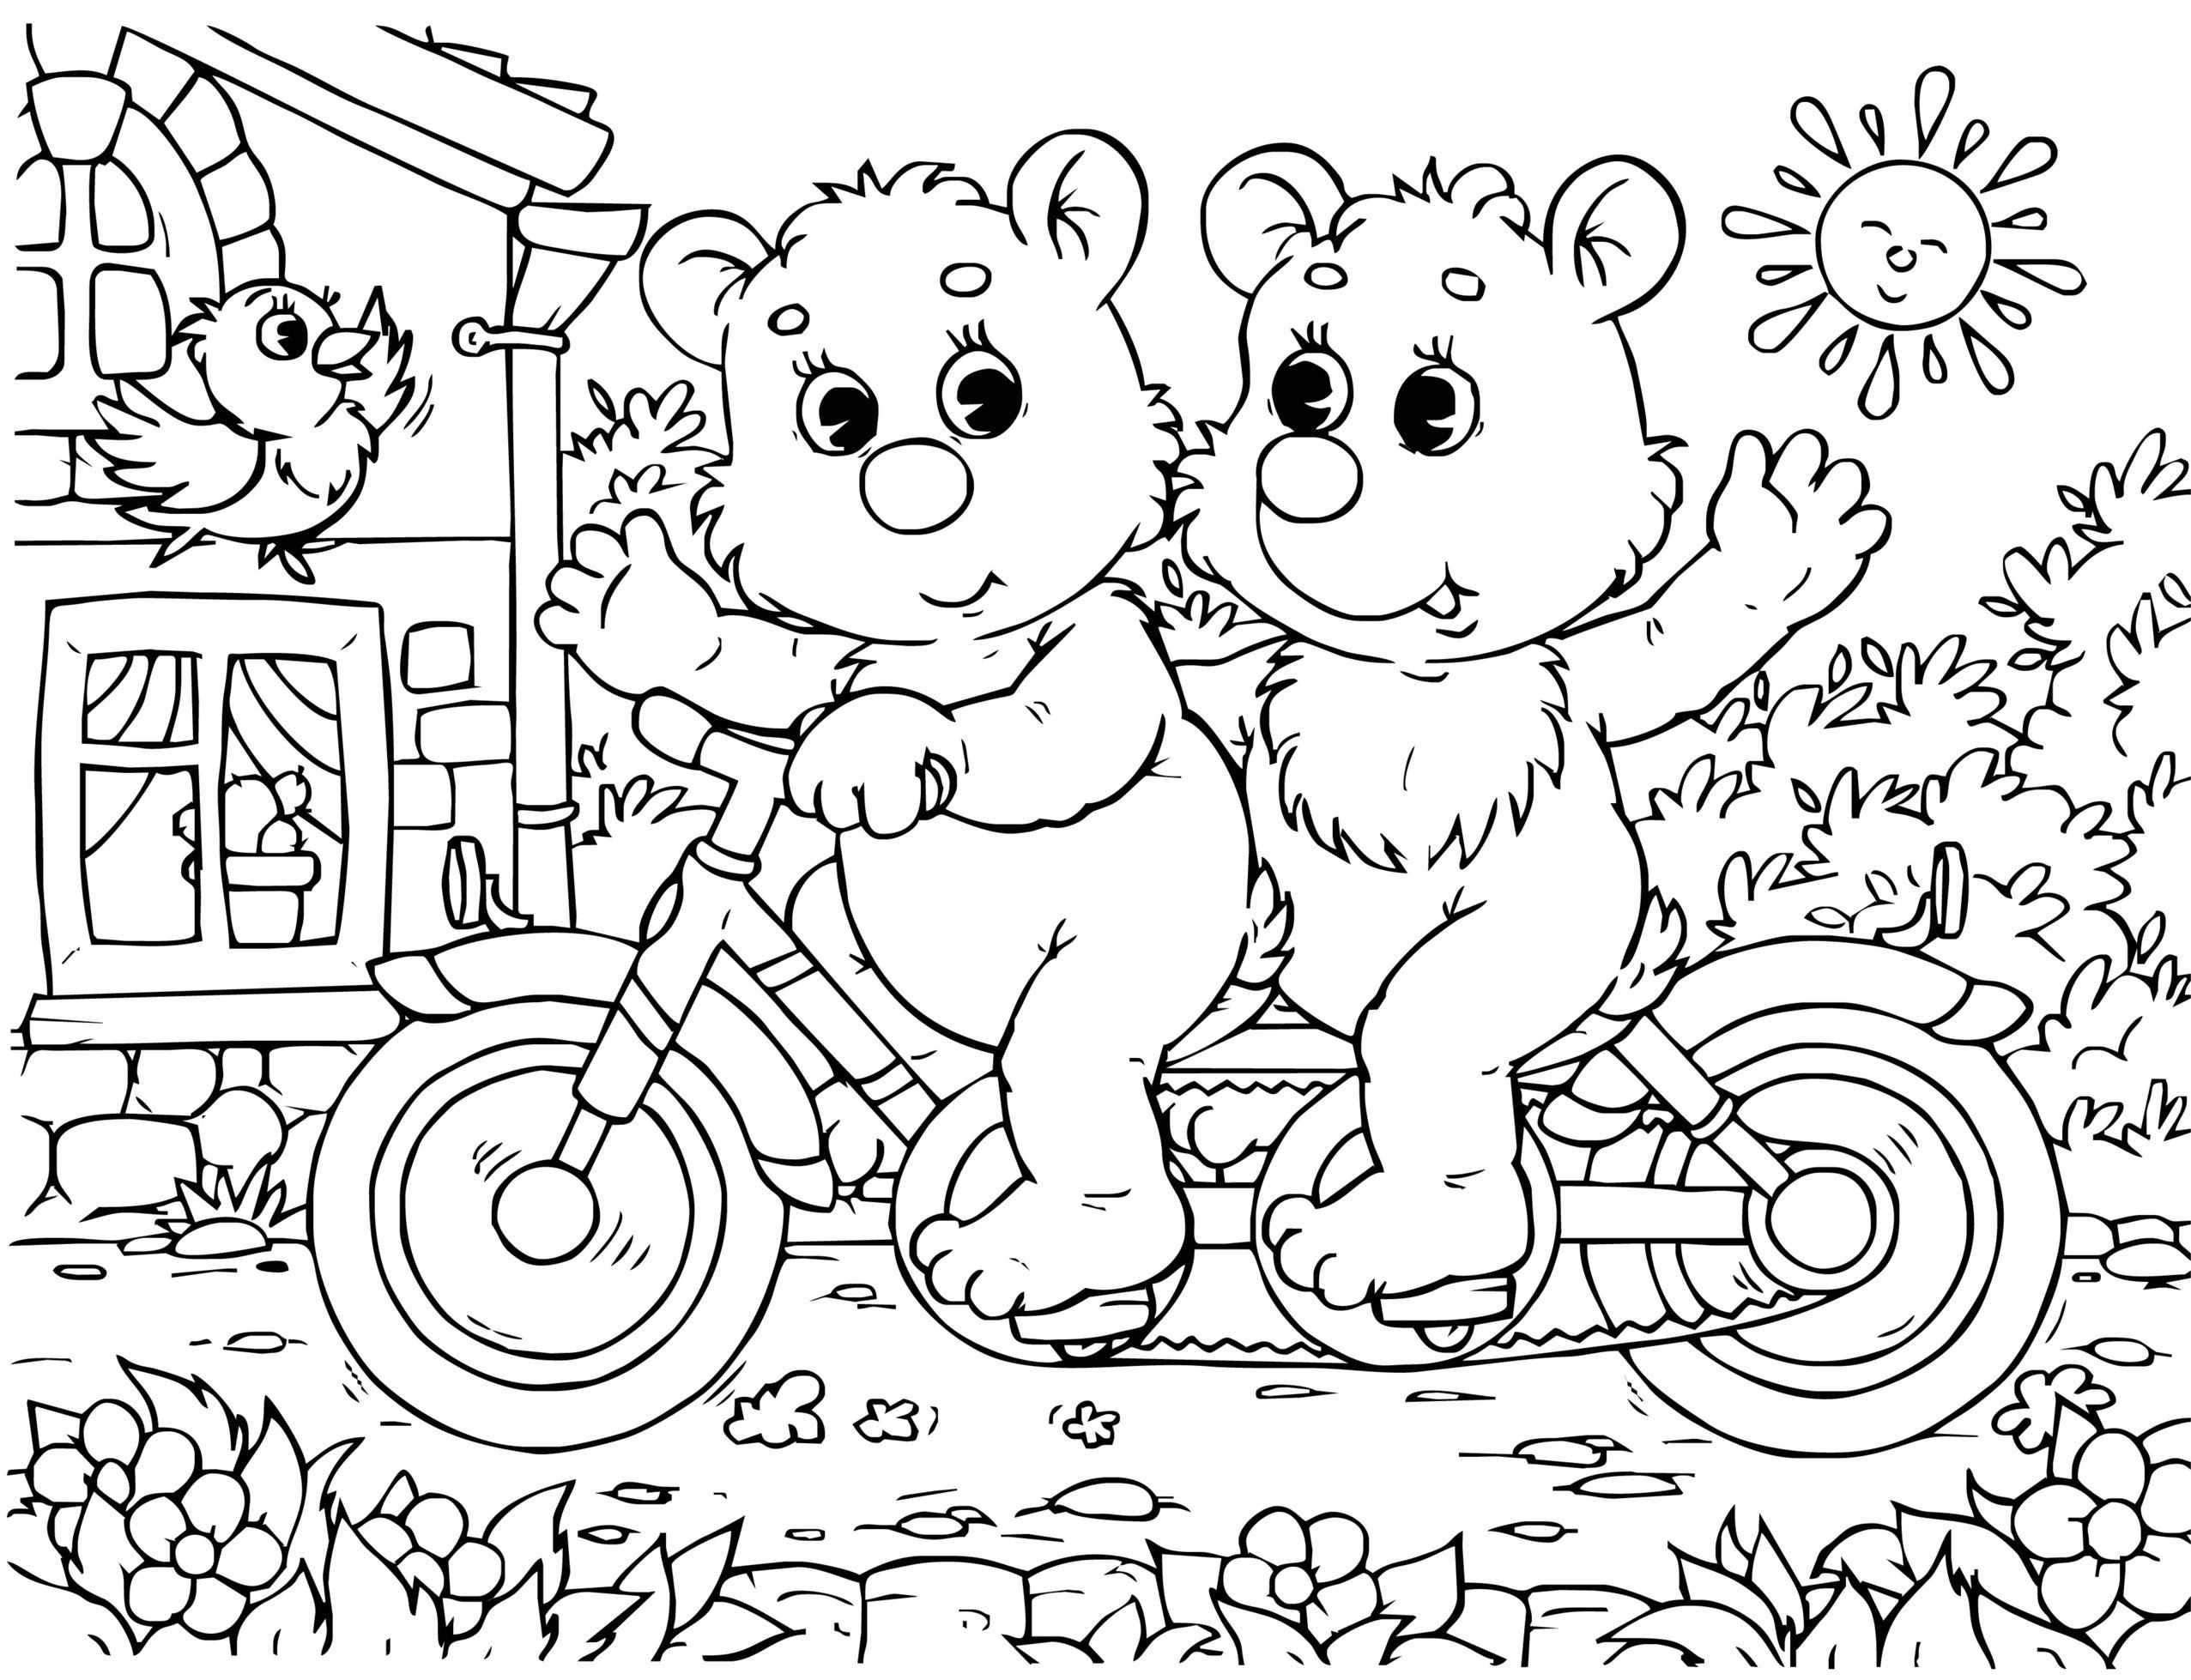 Мультсериалка: Медведи-Соседи (211в1) на DVD